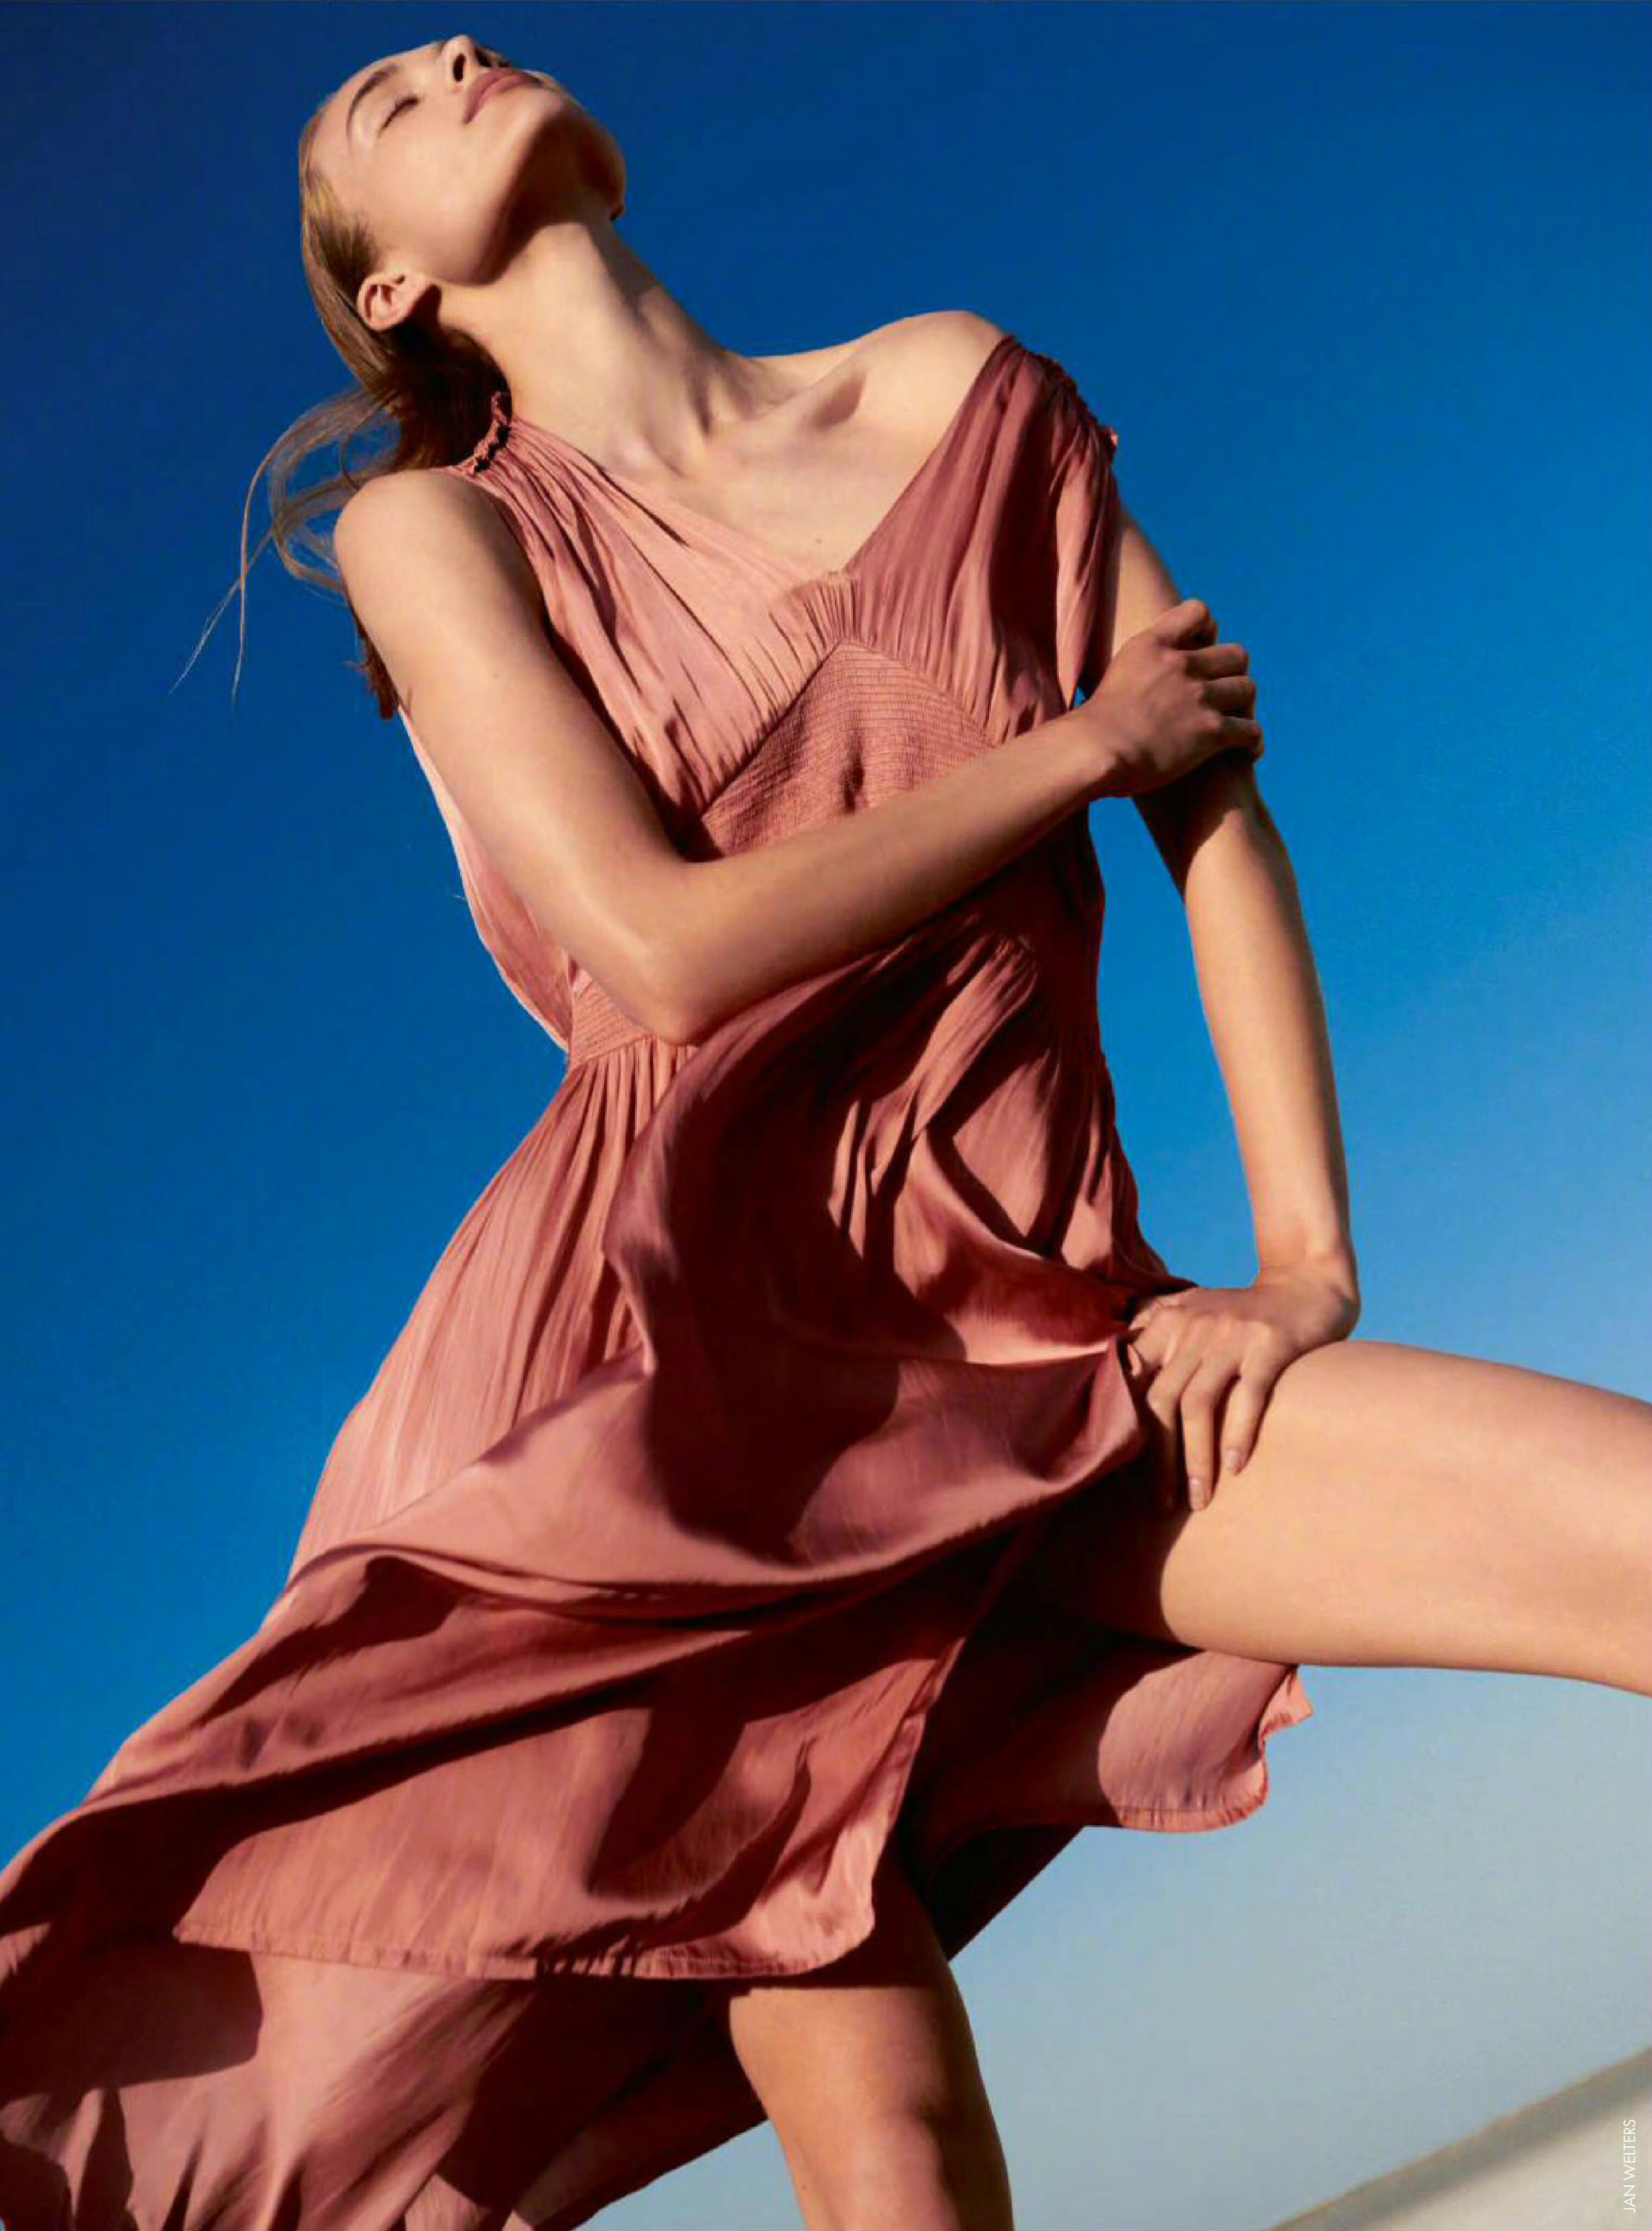 荷兰超模洛詹尼·维杜,elle六月刊封面大片,身材高挑,青春靓丽